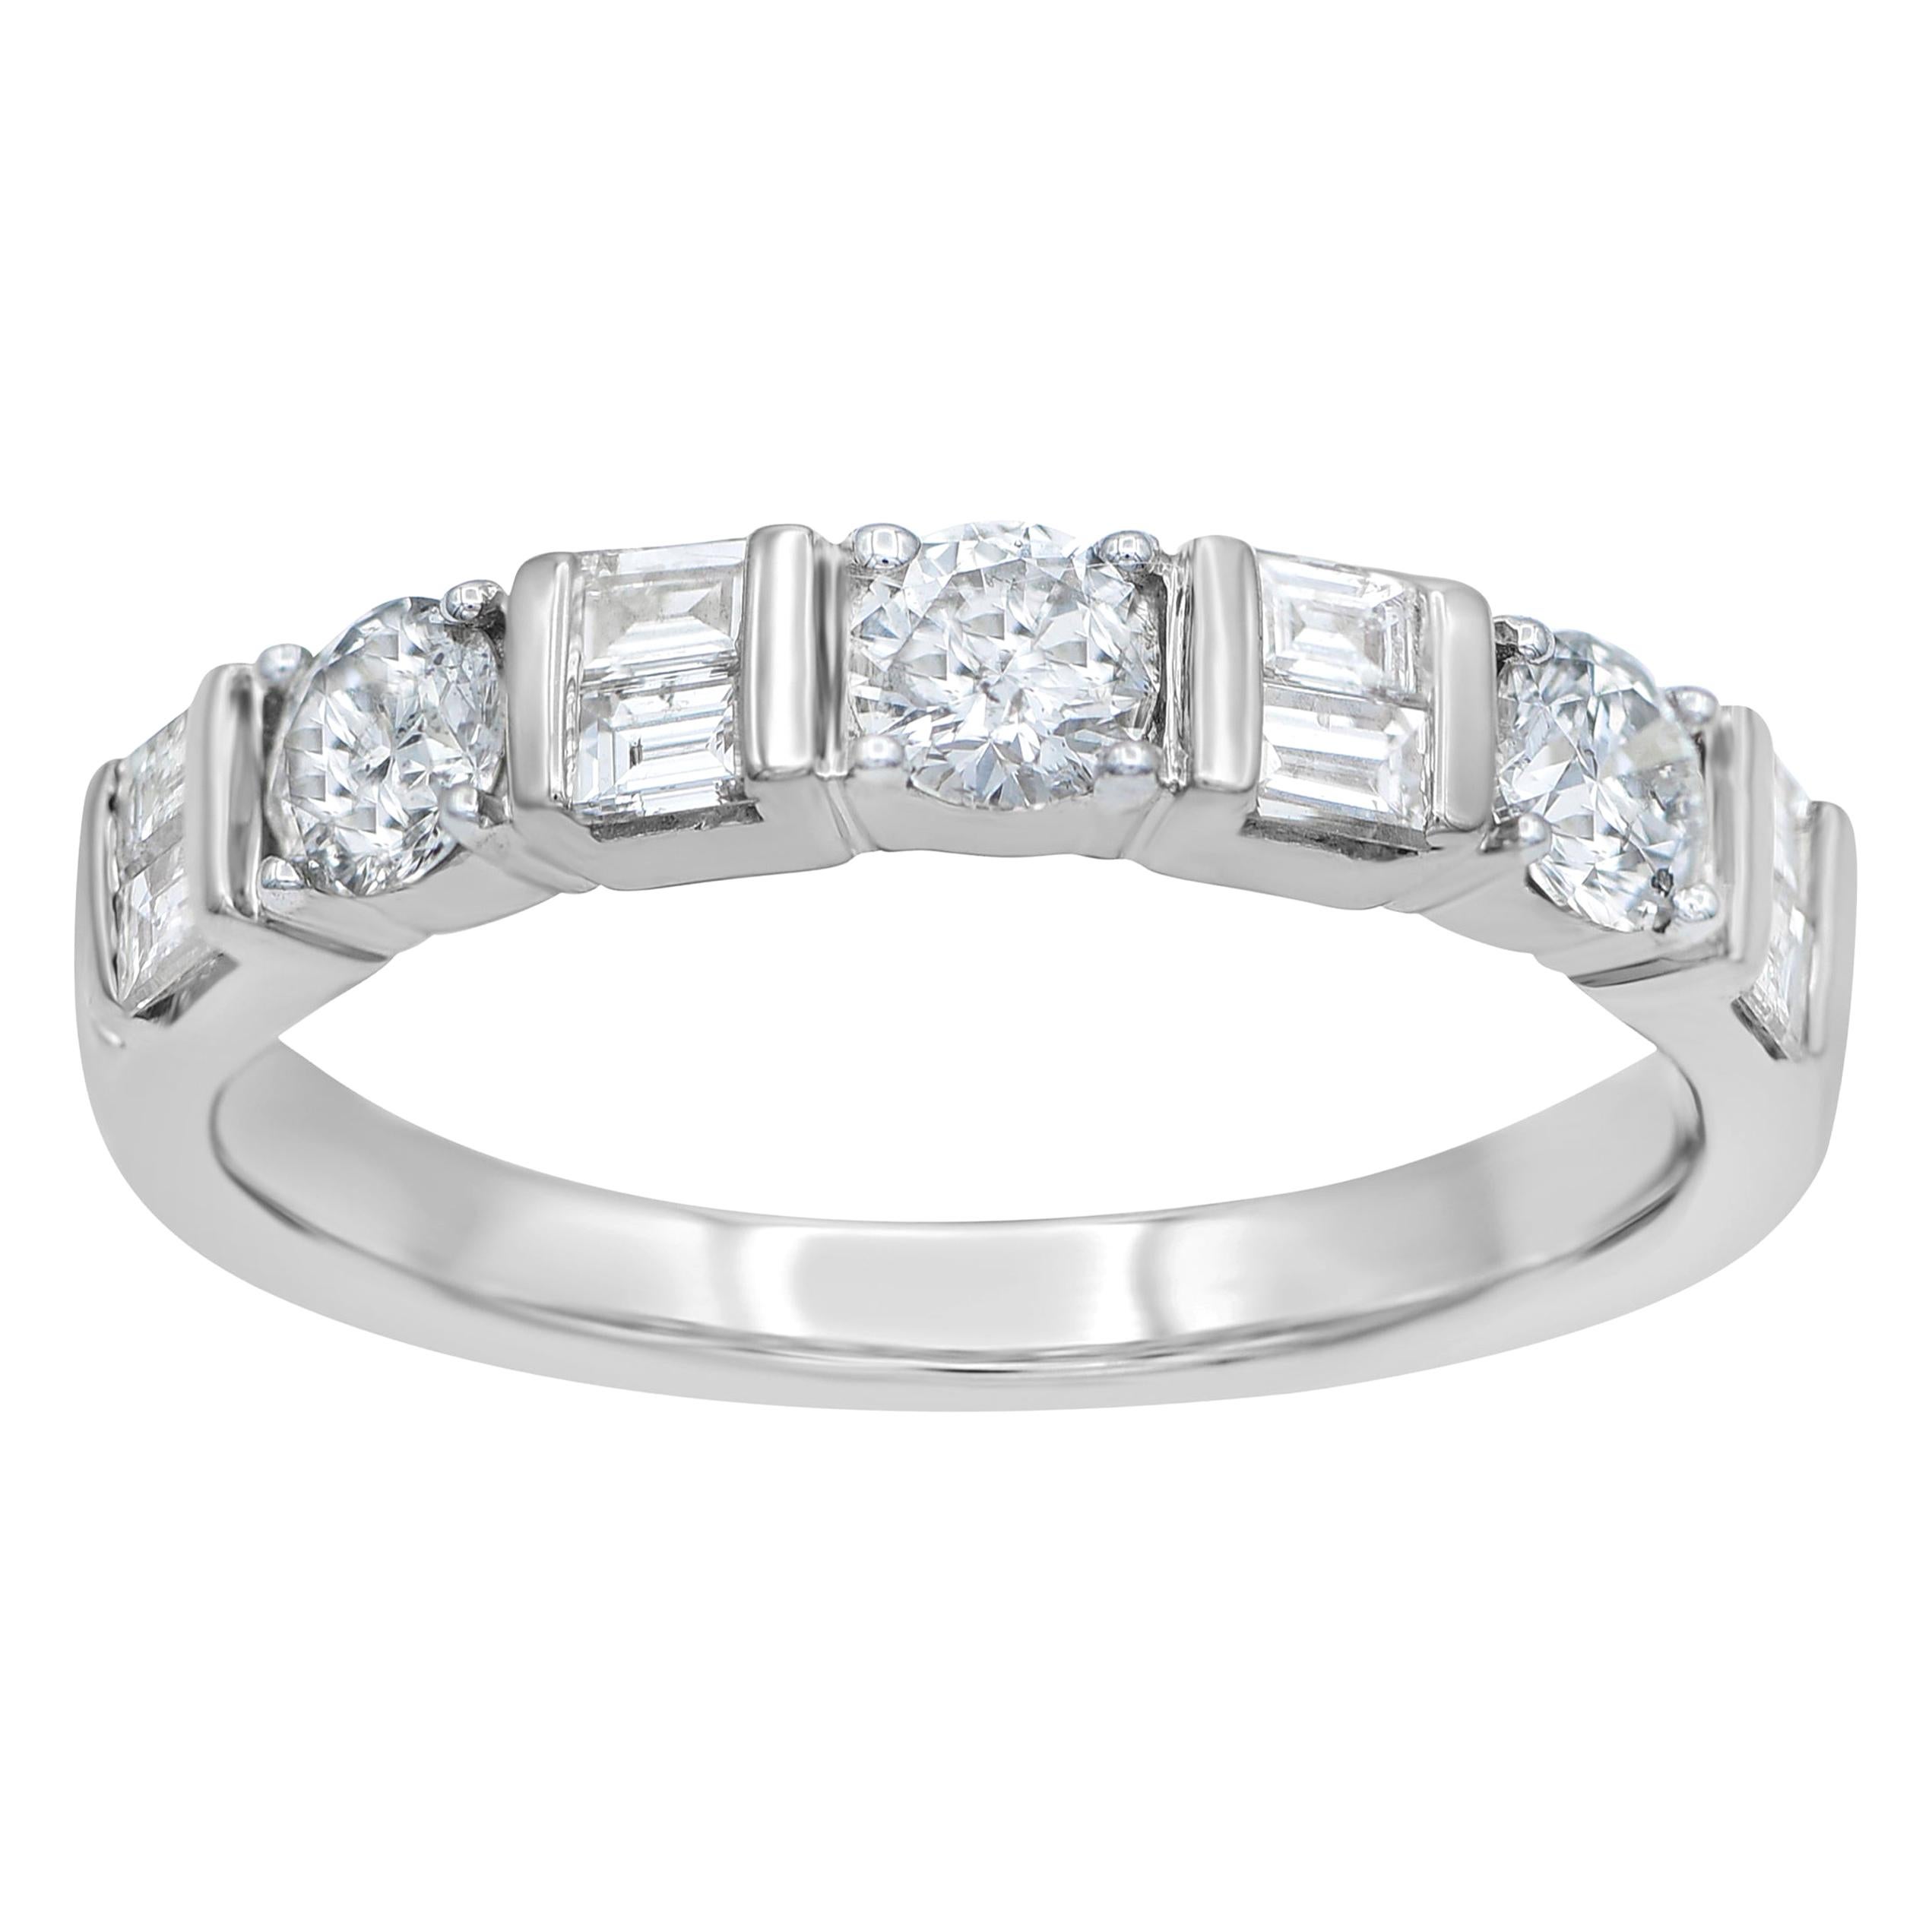 TJD 1.0 Carat Round & Baguette Diamond 14 Karat White Gold Engagement Band Ring